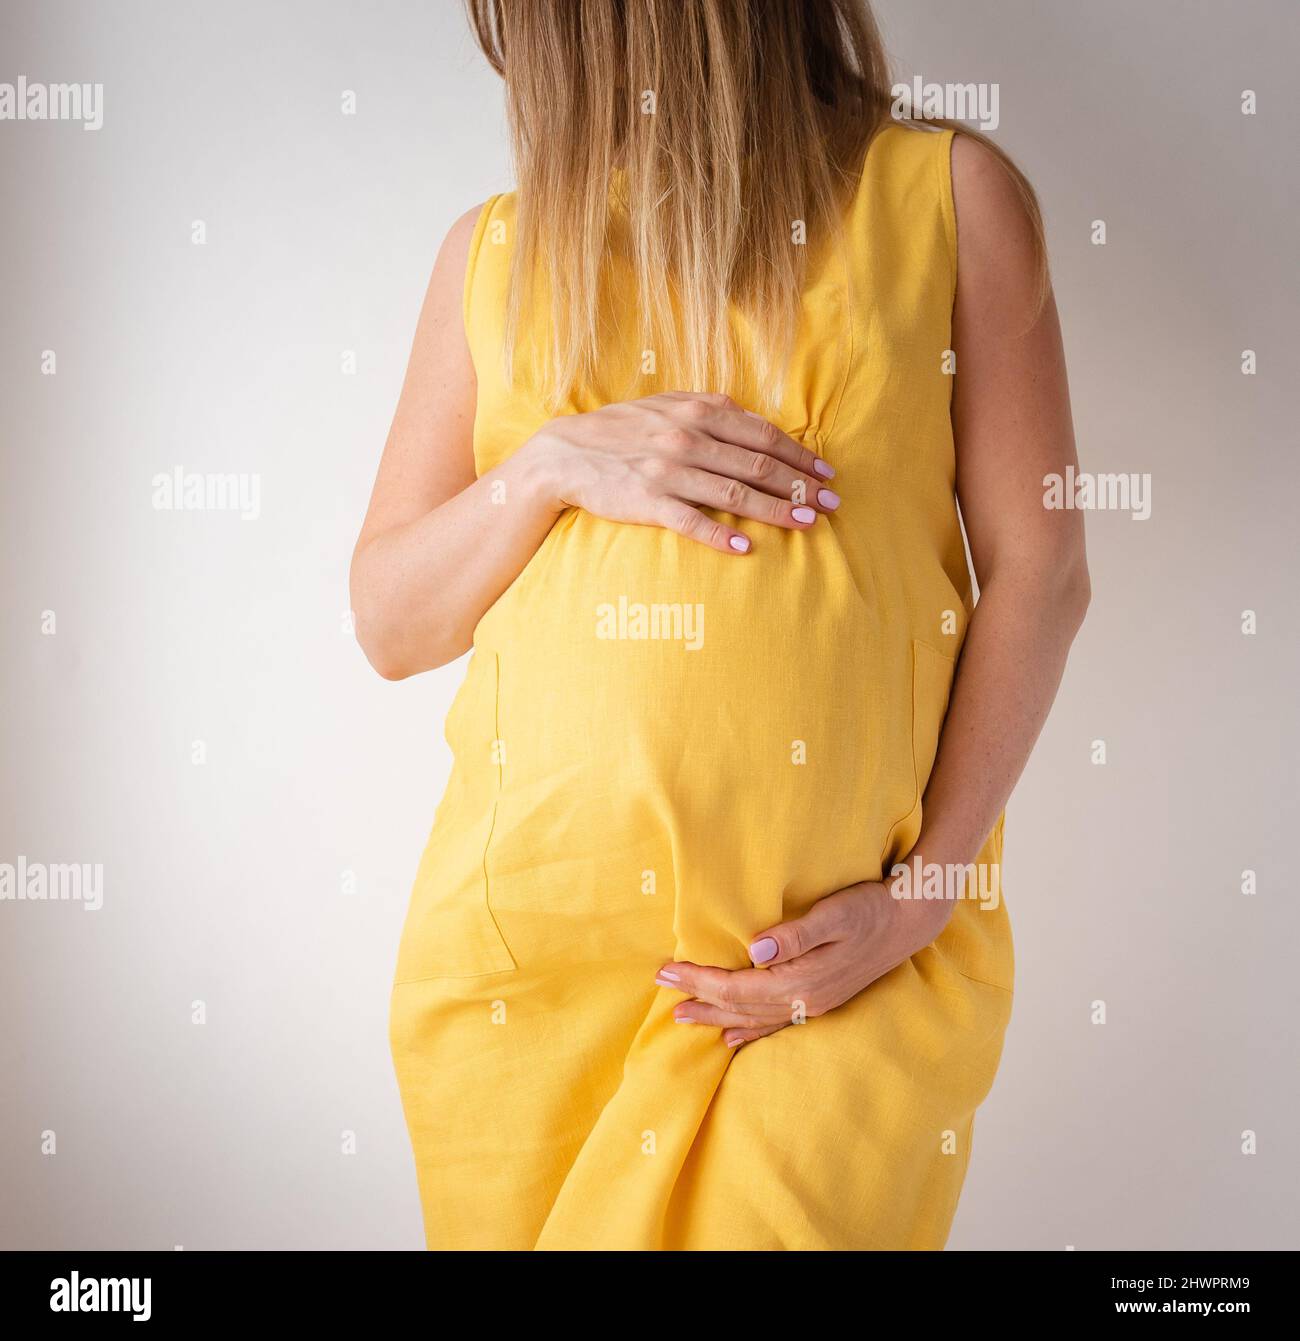 una mujer embarazada con un vestido amarillo se levanta sobre un fondo blanco con las manos en su estómago, el concepto de feminidad Foto de stock